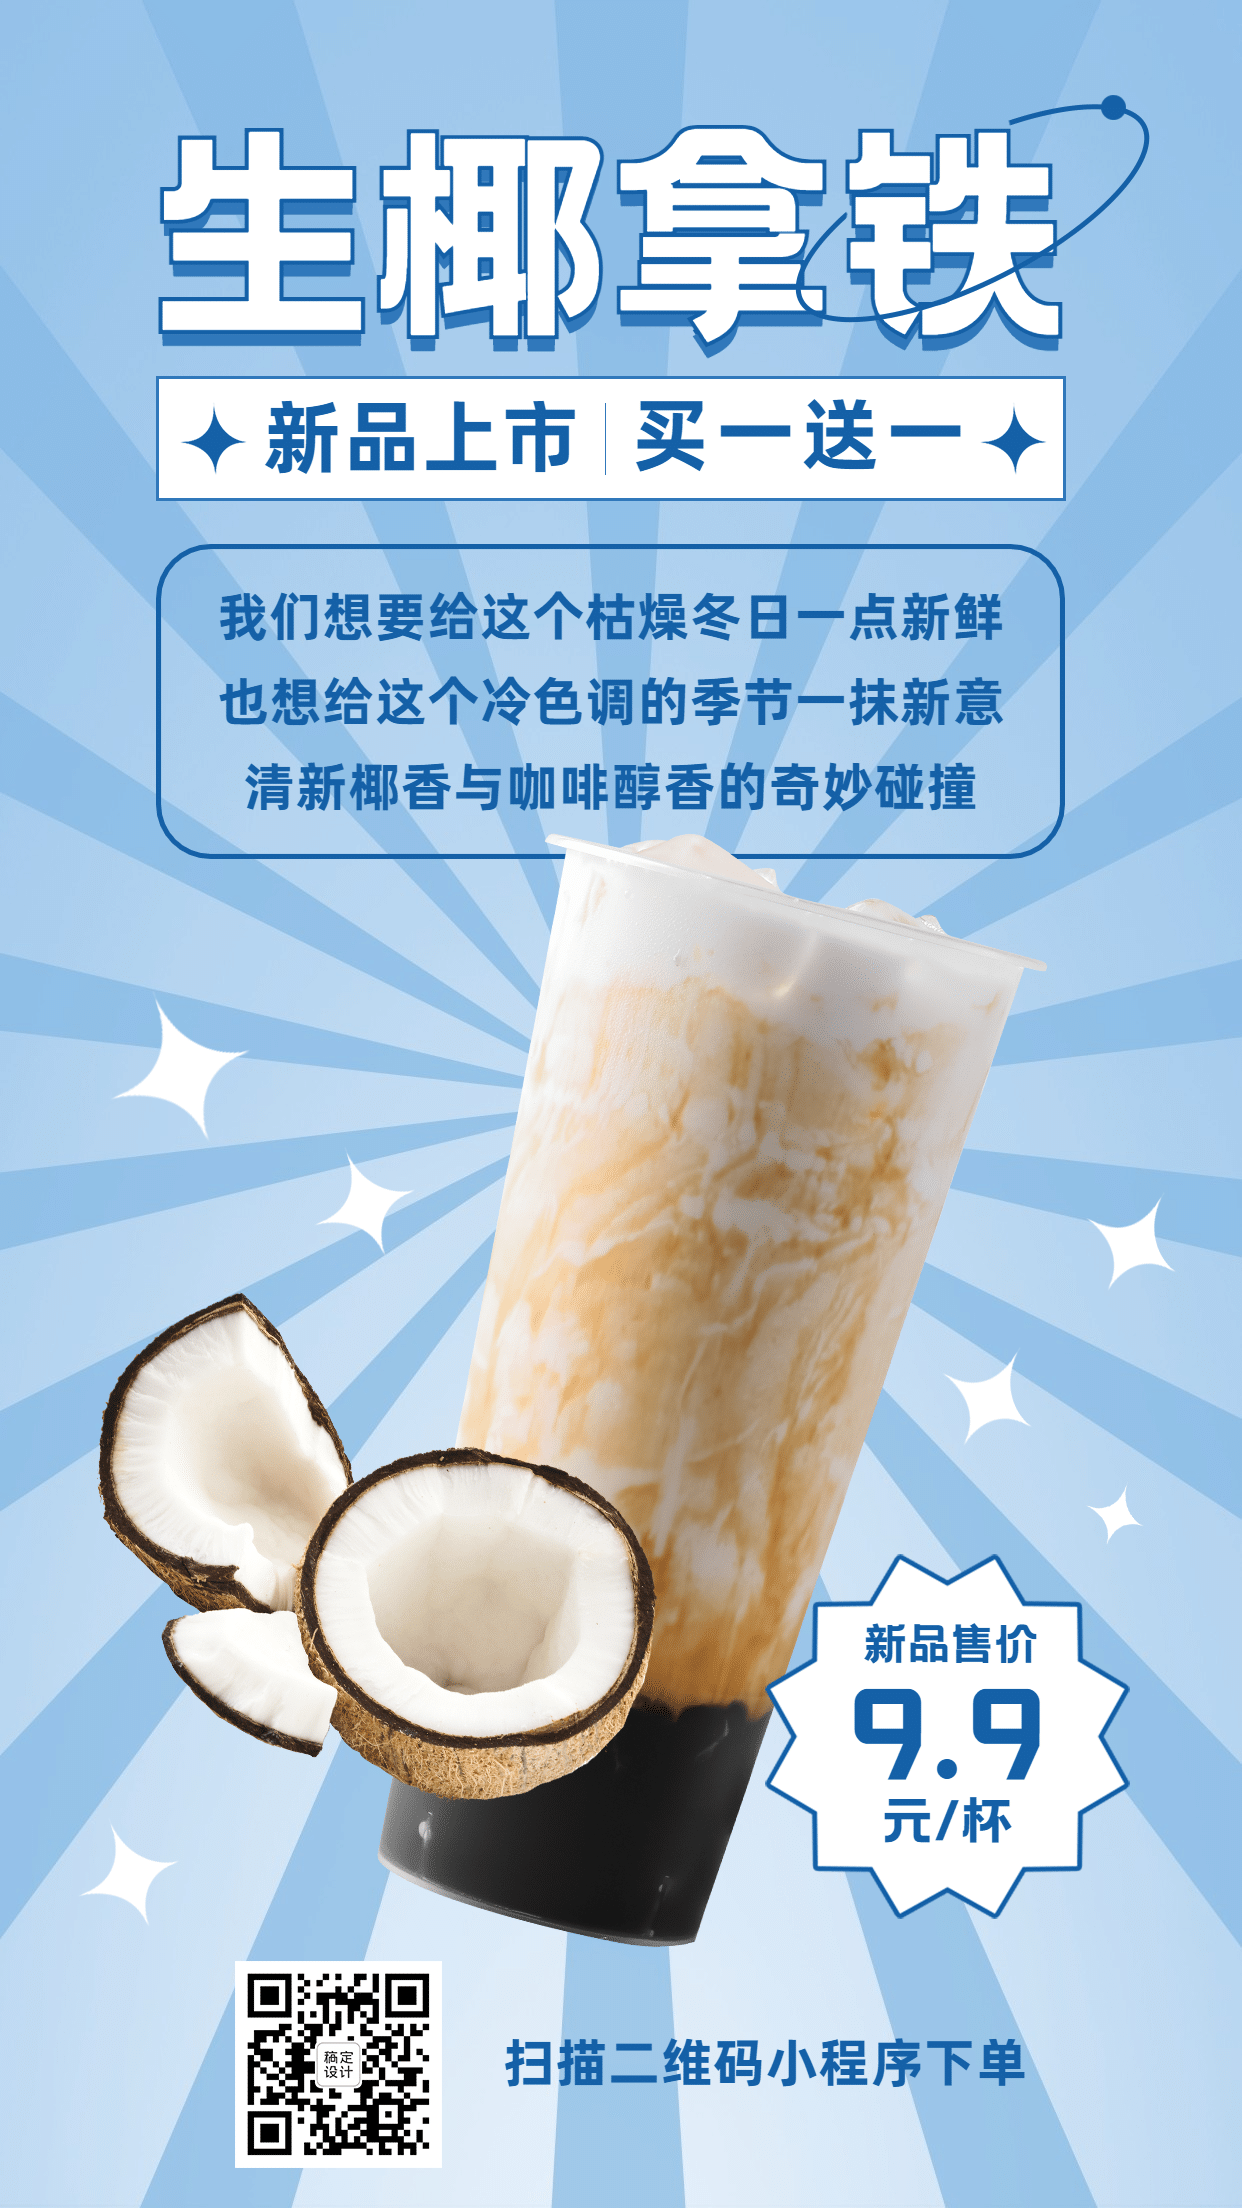 奶茶饮品产品营销简约手机海报预览效果